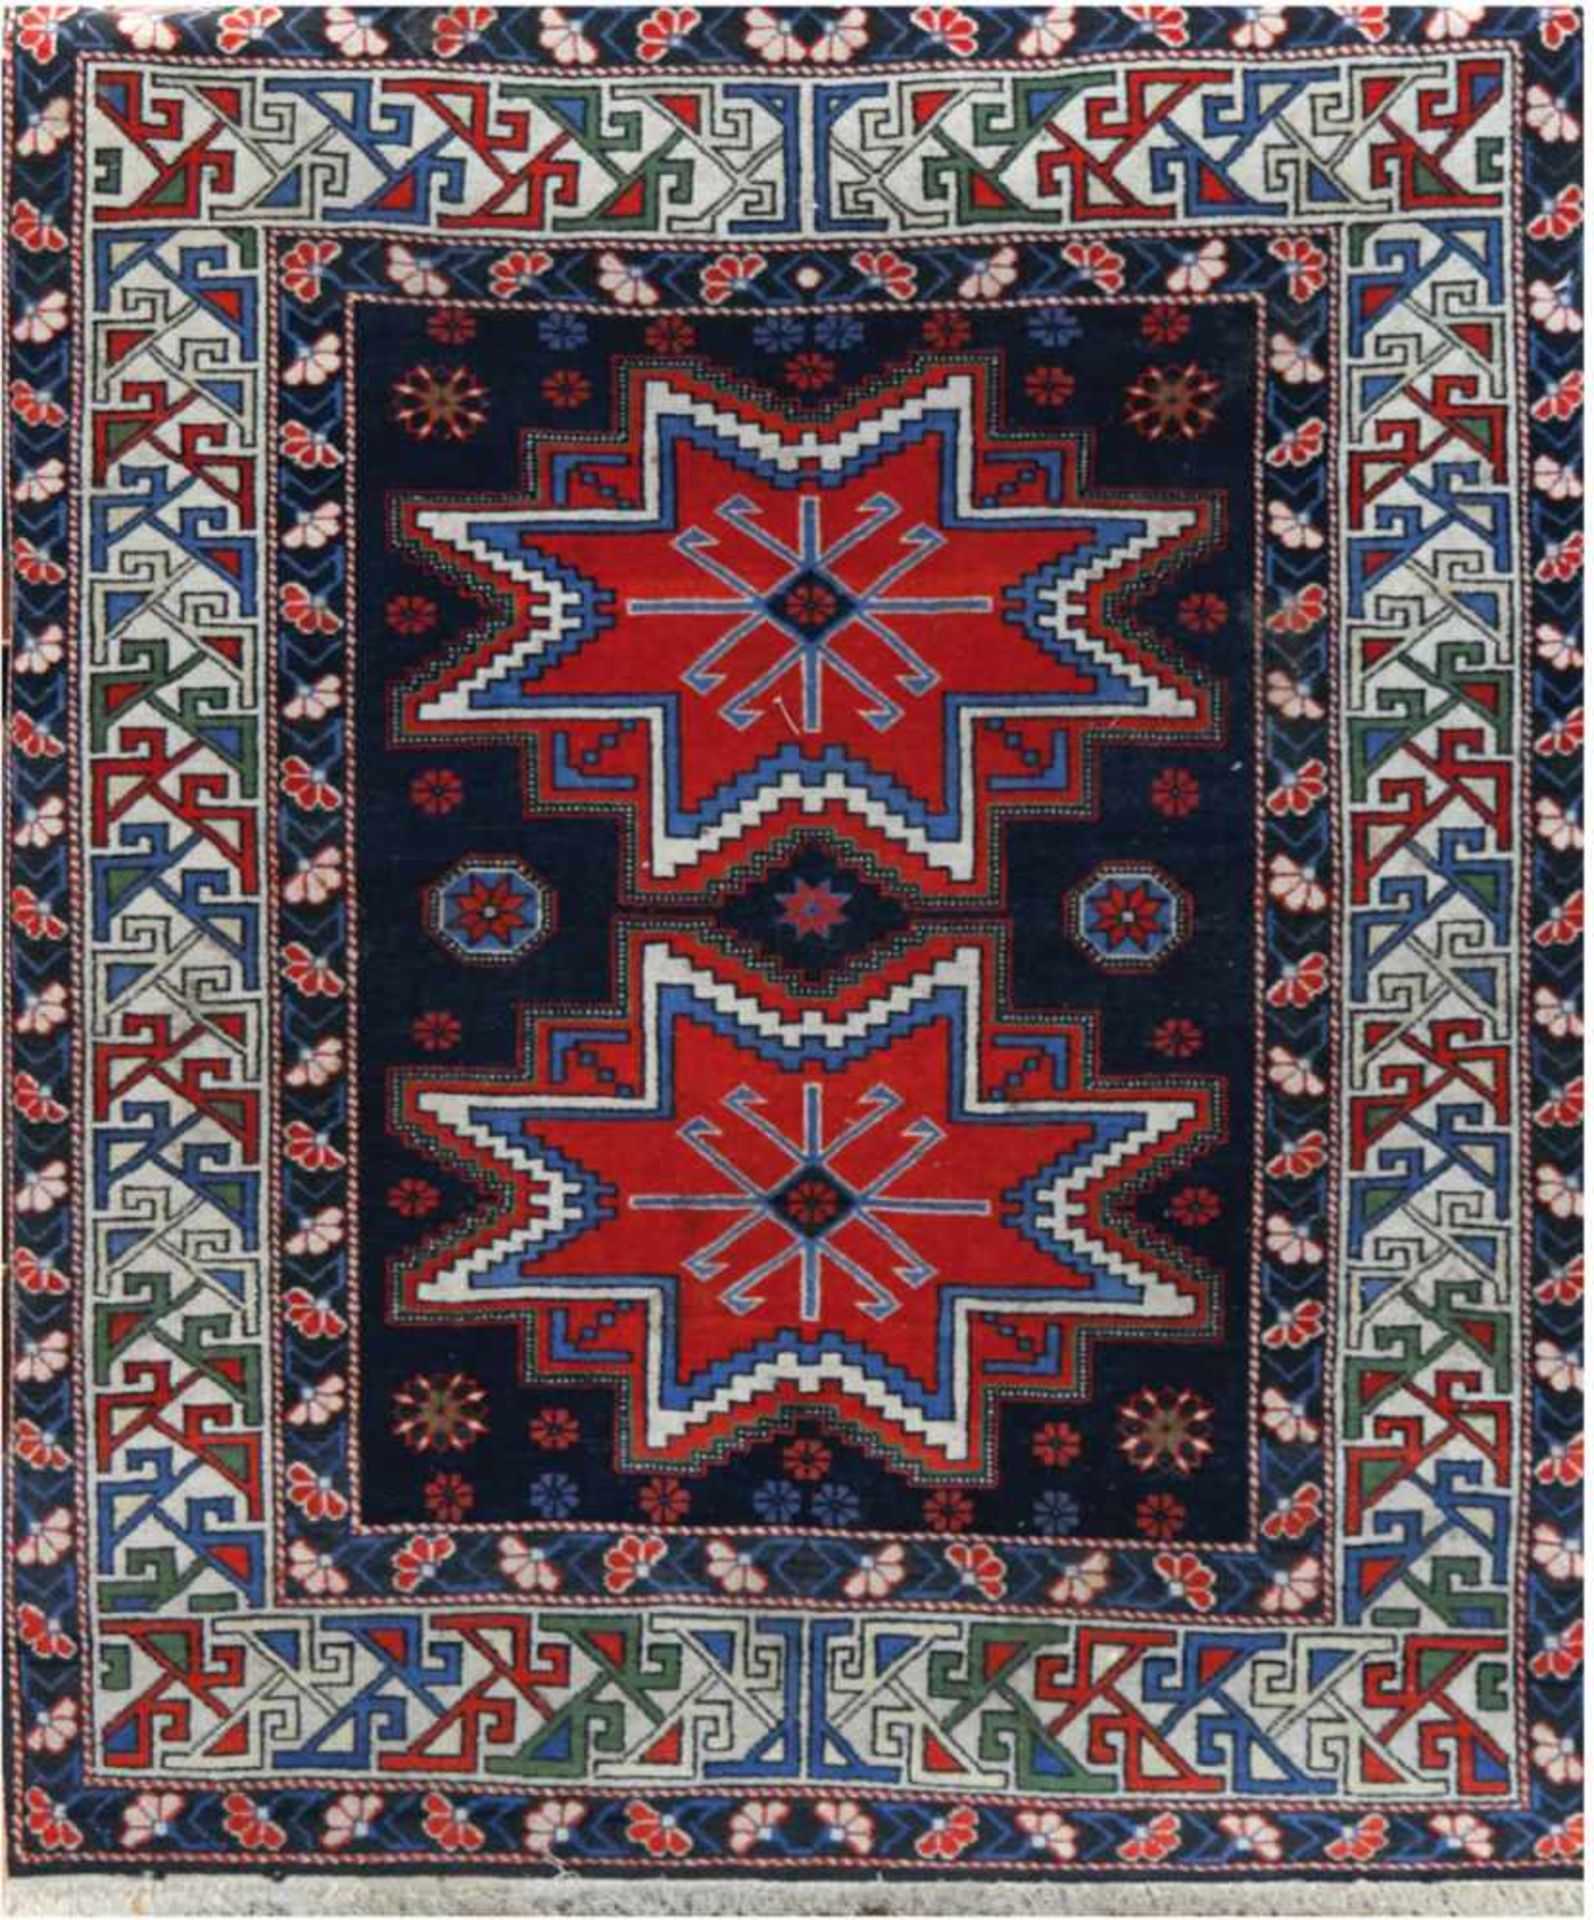 Shirvan, rot-/blaugrundig, mit zentralem Medaillon und floralen Motiven, fleckig,Reinigung